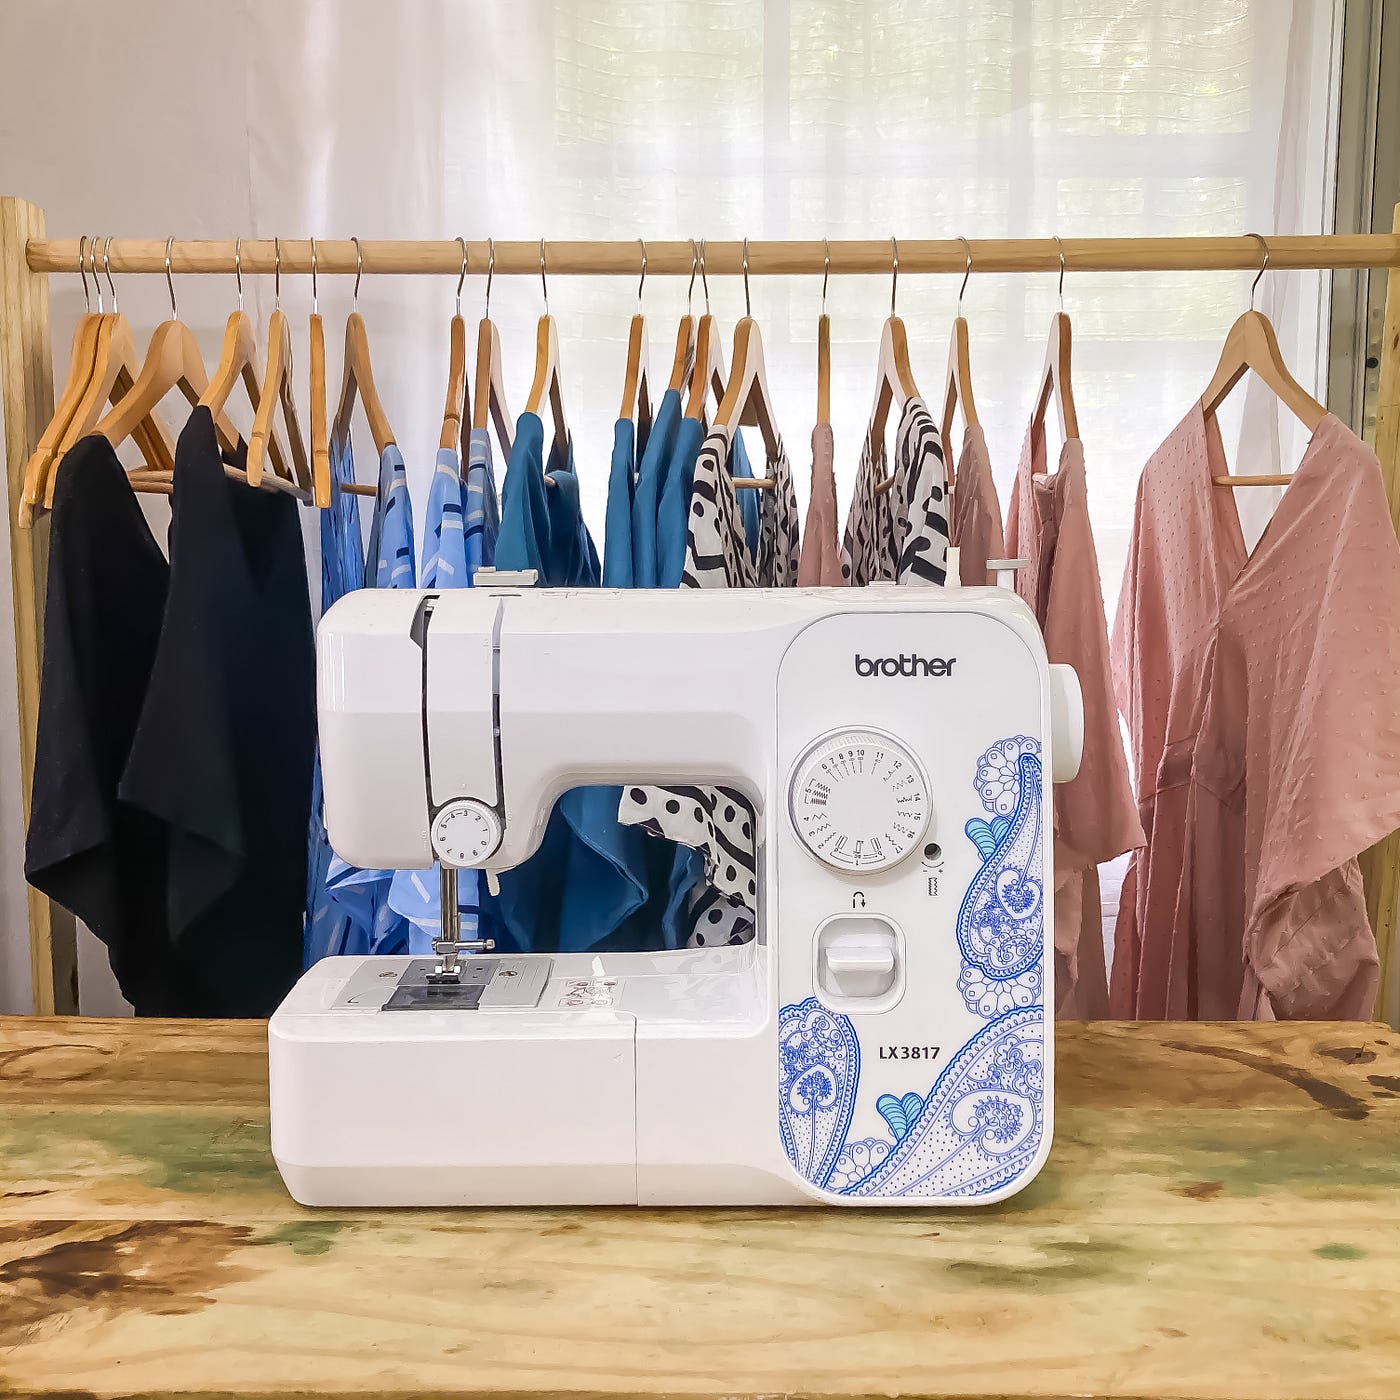 Quiero crear mi propia ropa, pero…¿Cómo empiezo?” | by Descosiendo La Moda  | Medium